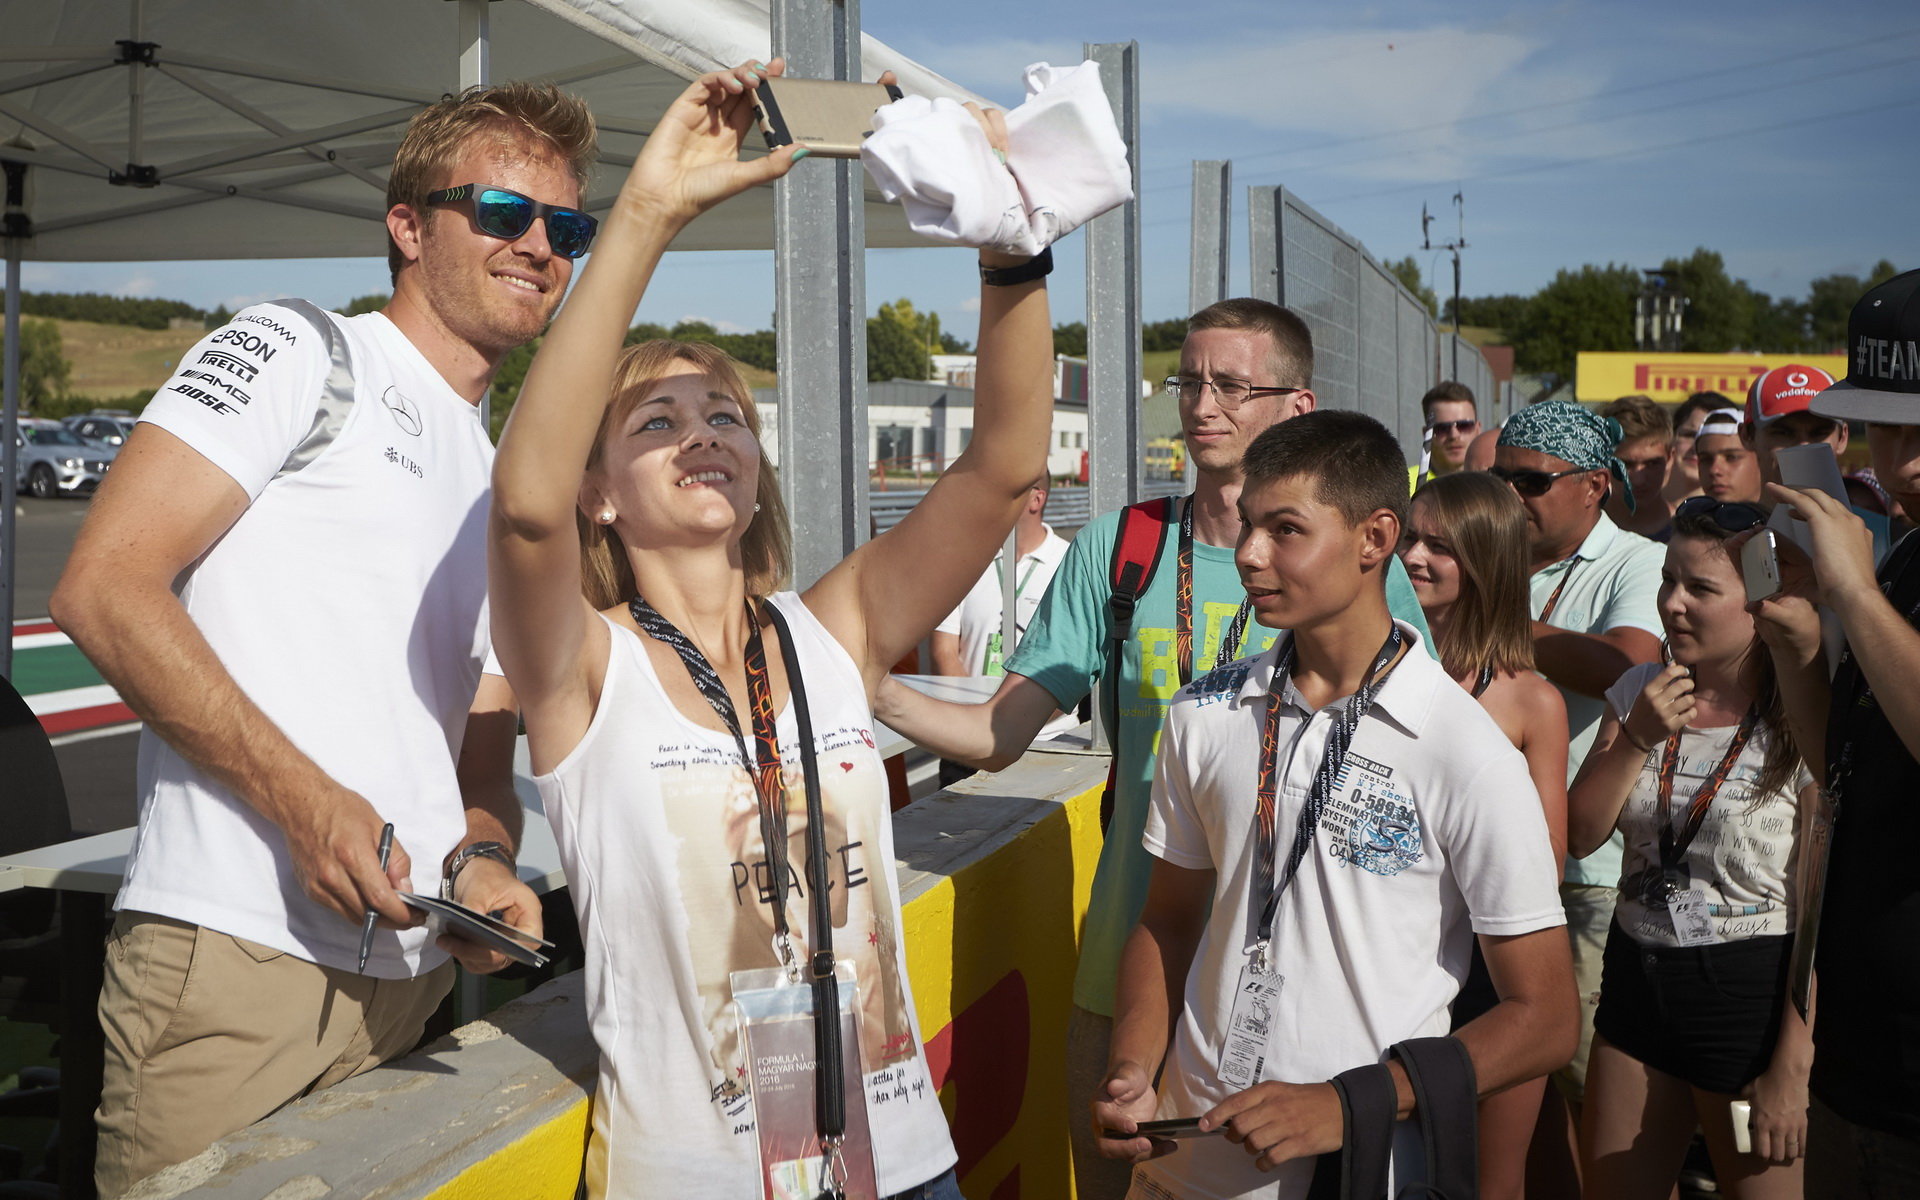 Nico Rosberg při autogramiádě v Maďarsku